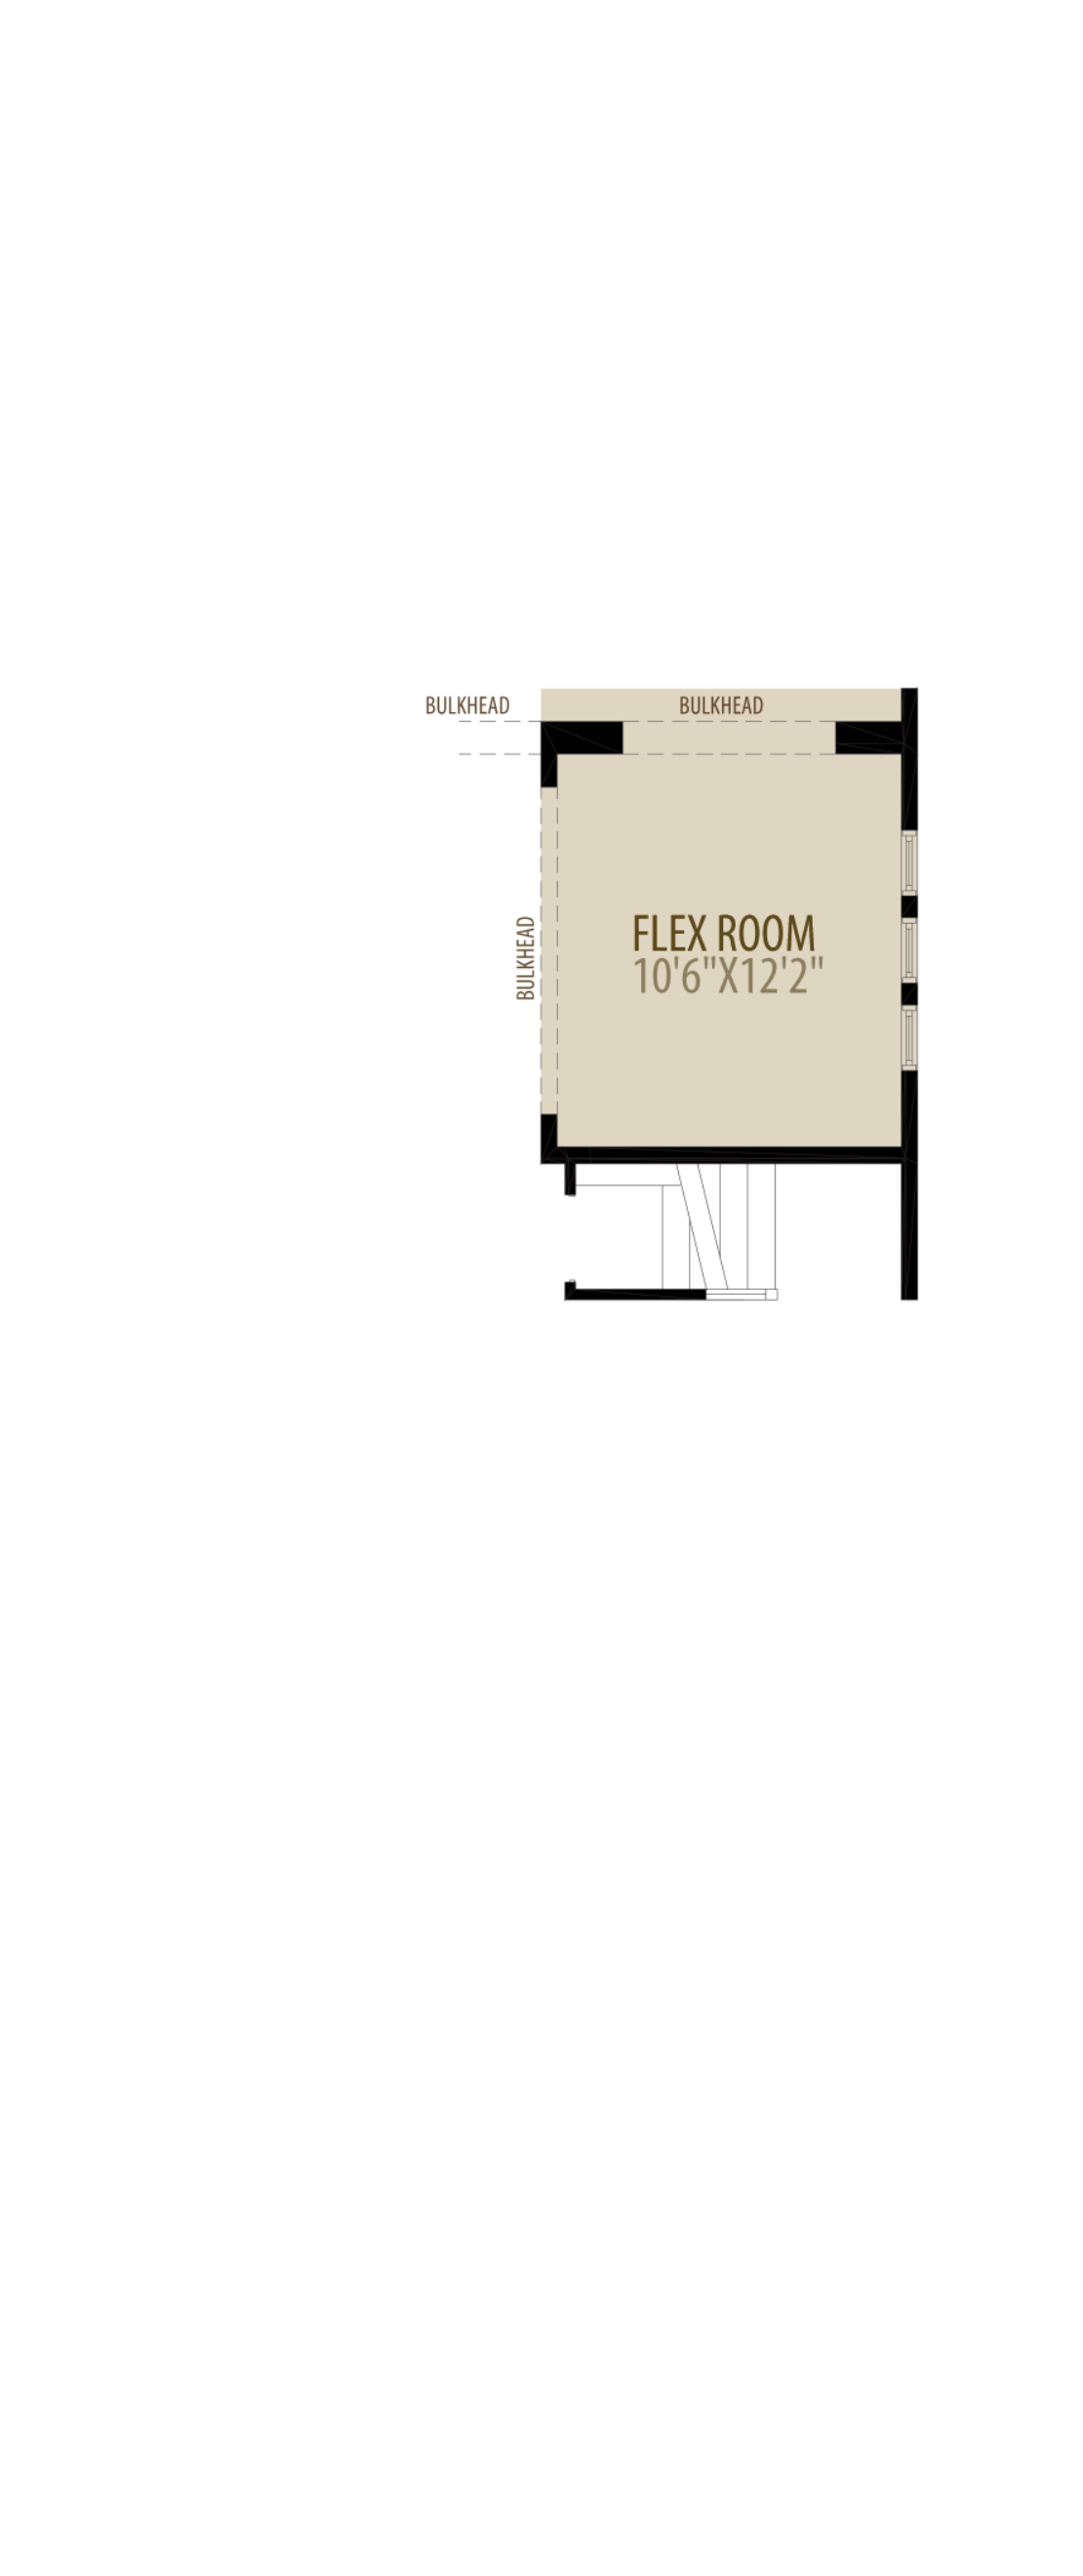 Flex Room adds 132 sq ft